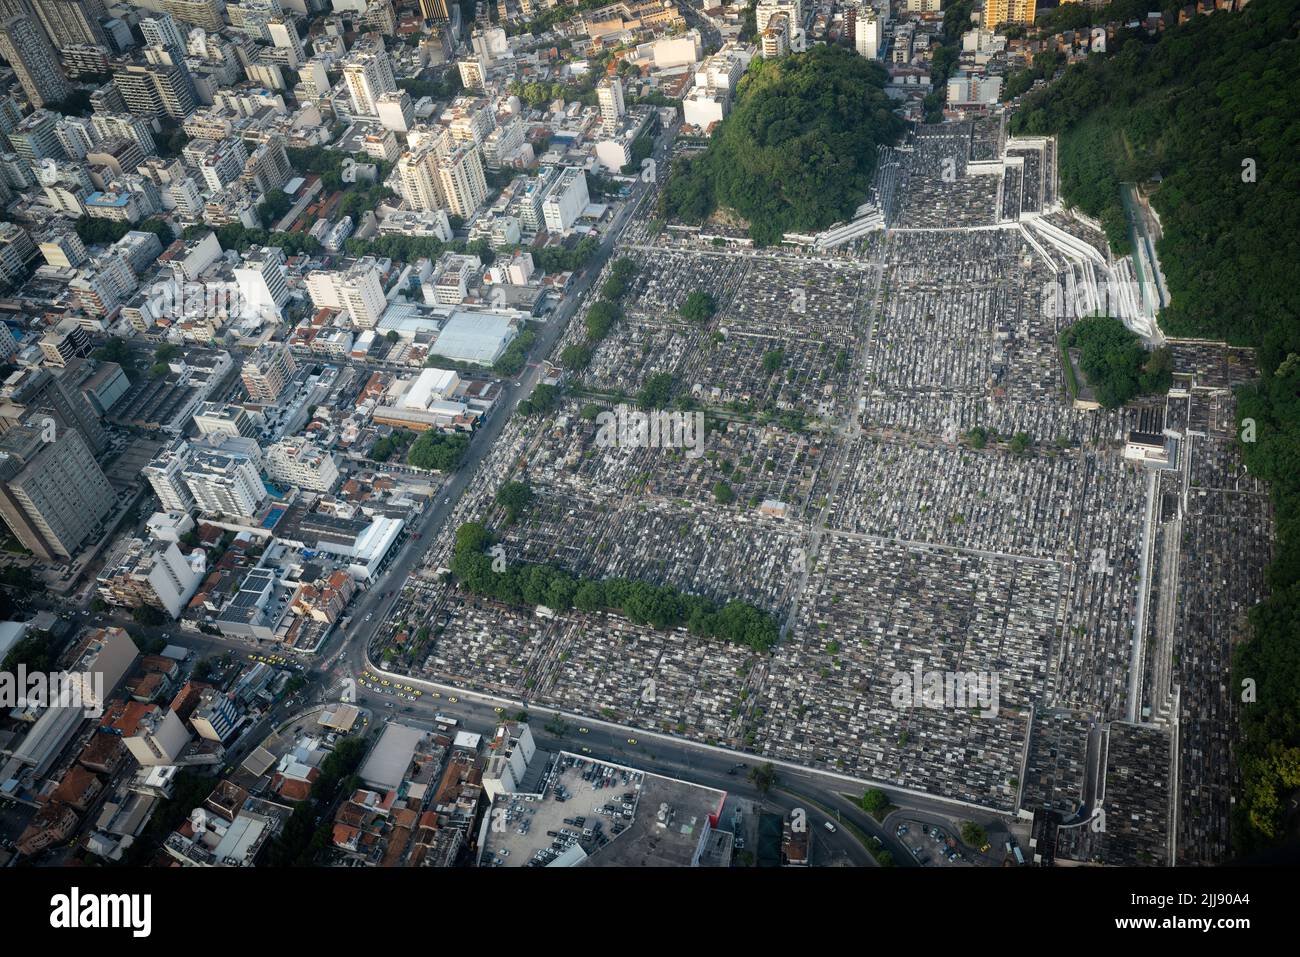 Vue aérienne du cimetière de Sao Joao Batista - Rio de Janeiro, Brésil Banque D'Images